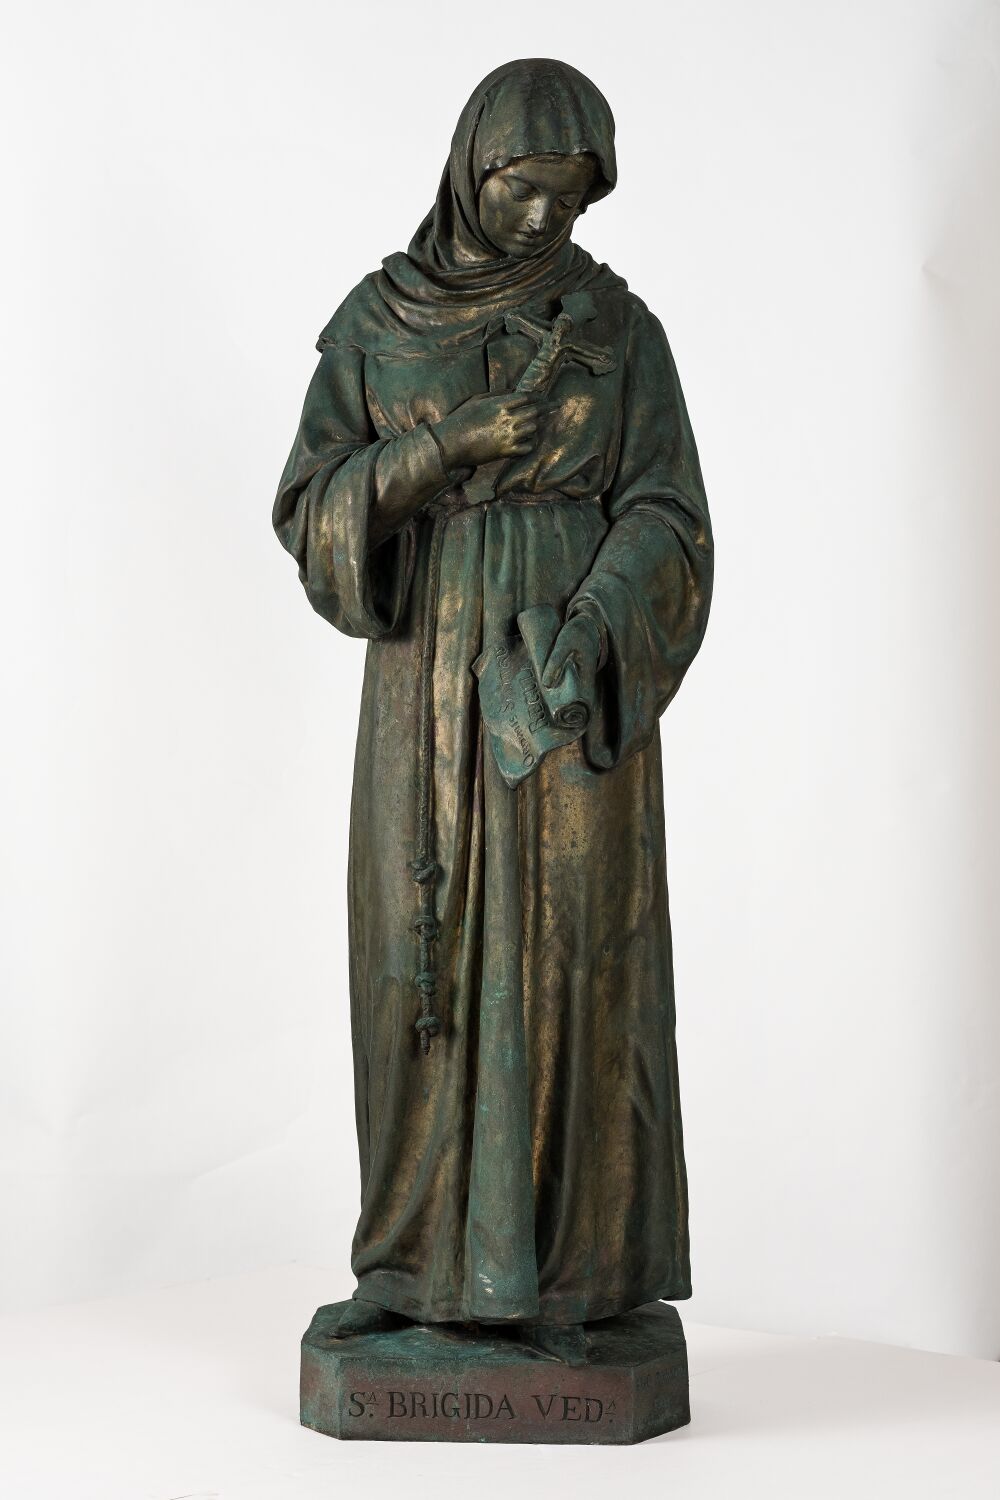 Santa Brigida vedova, Santa Brigida di Svezia (scultura, opera isolata) di Zannoni Ugo - veronese (sec. XIX)